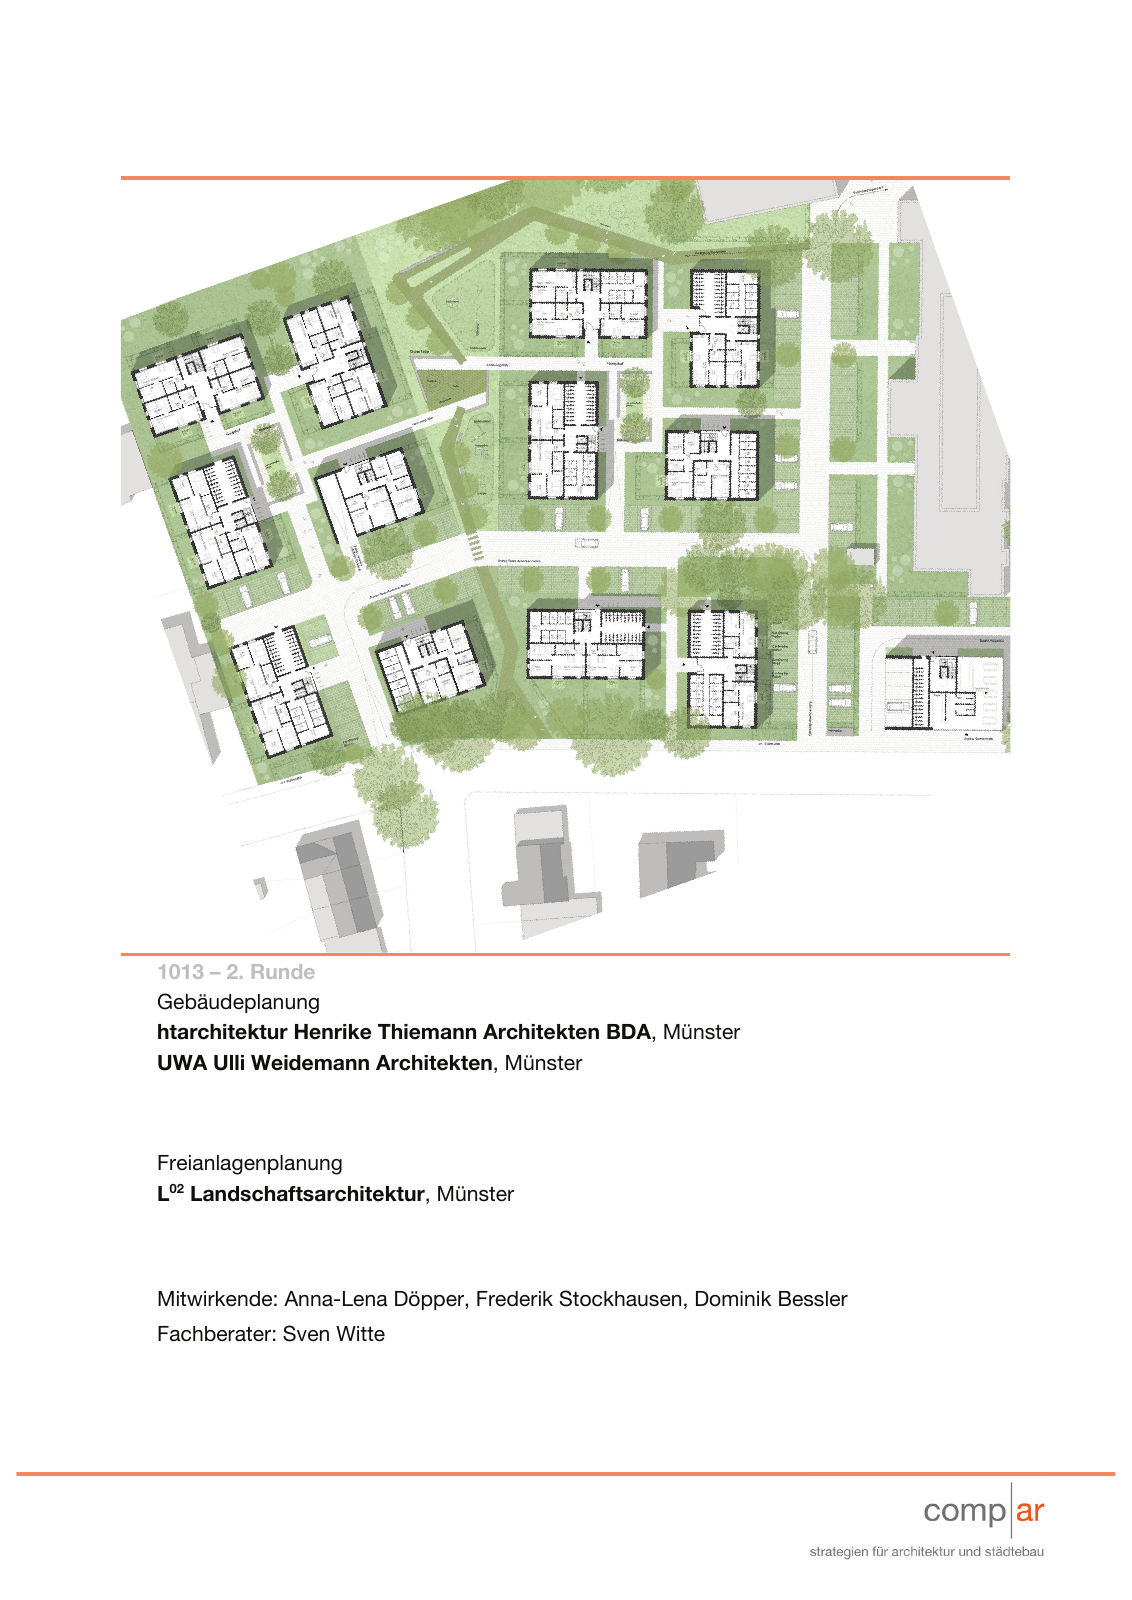 Vorschau Neubau von 100 Wohneinheiten [Nordhorn] Seite 75